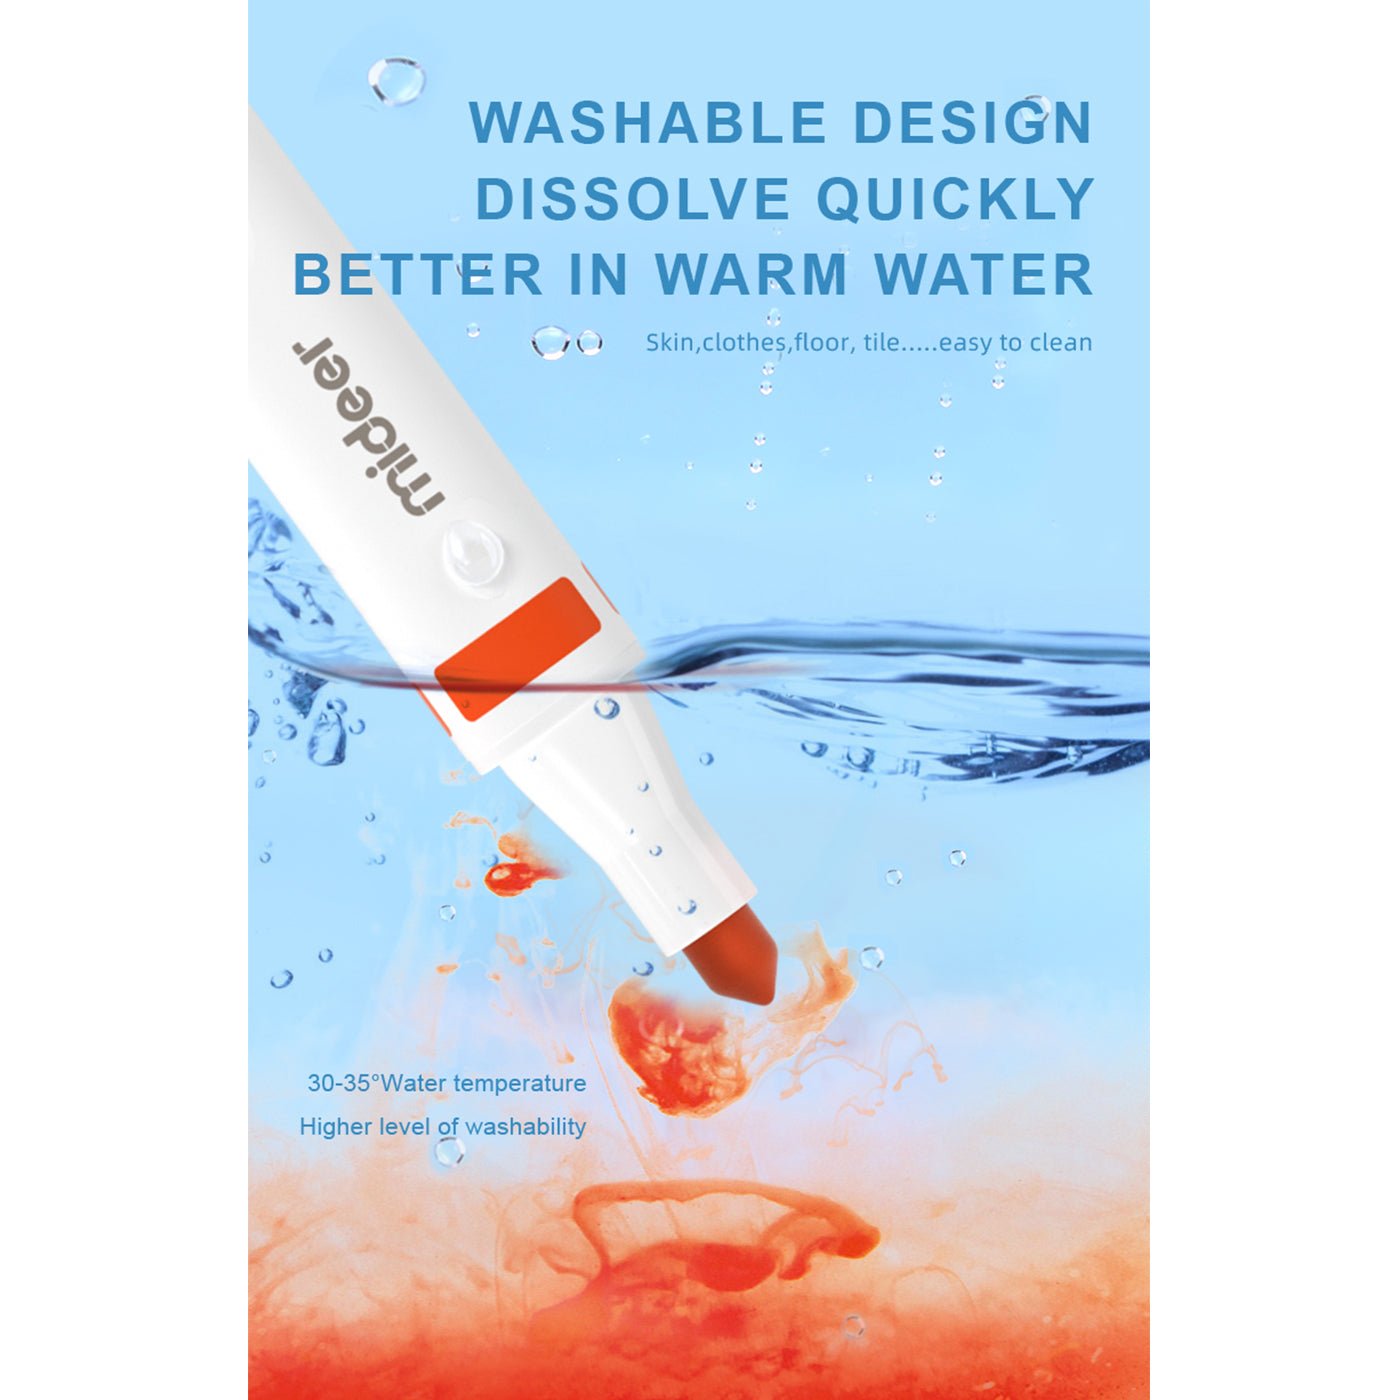 Washable Marker 48 Colors - 0cm